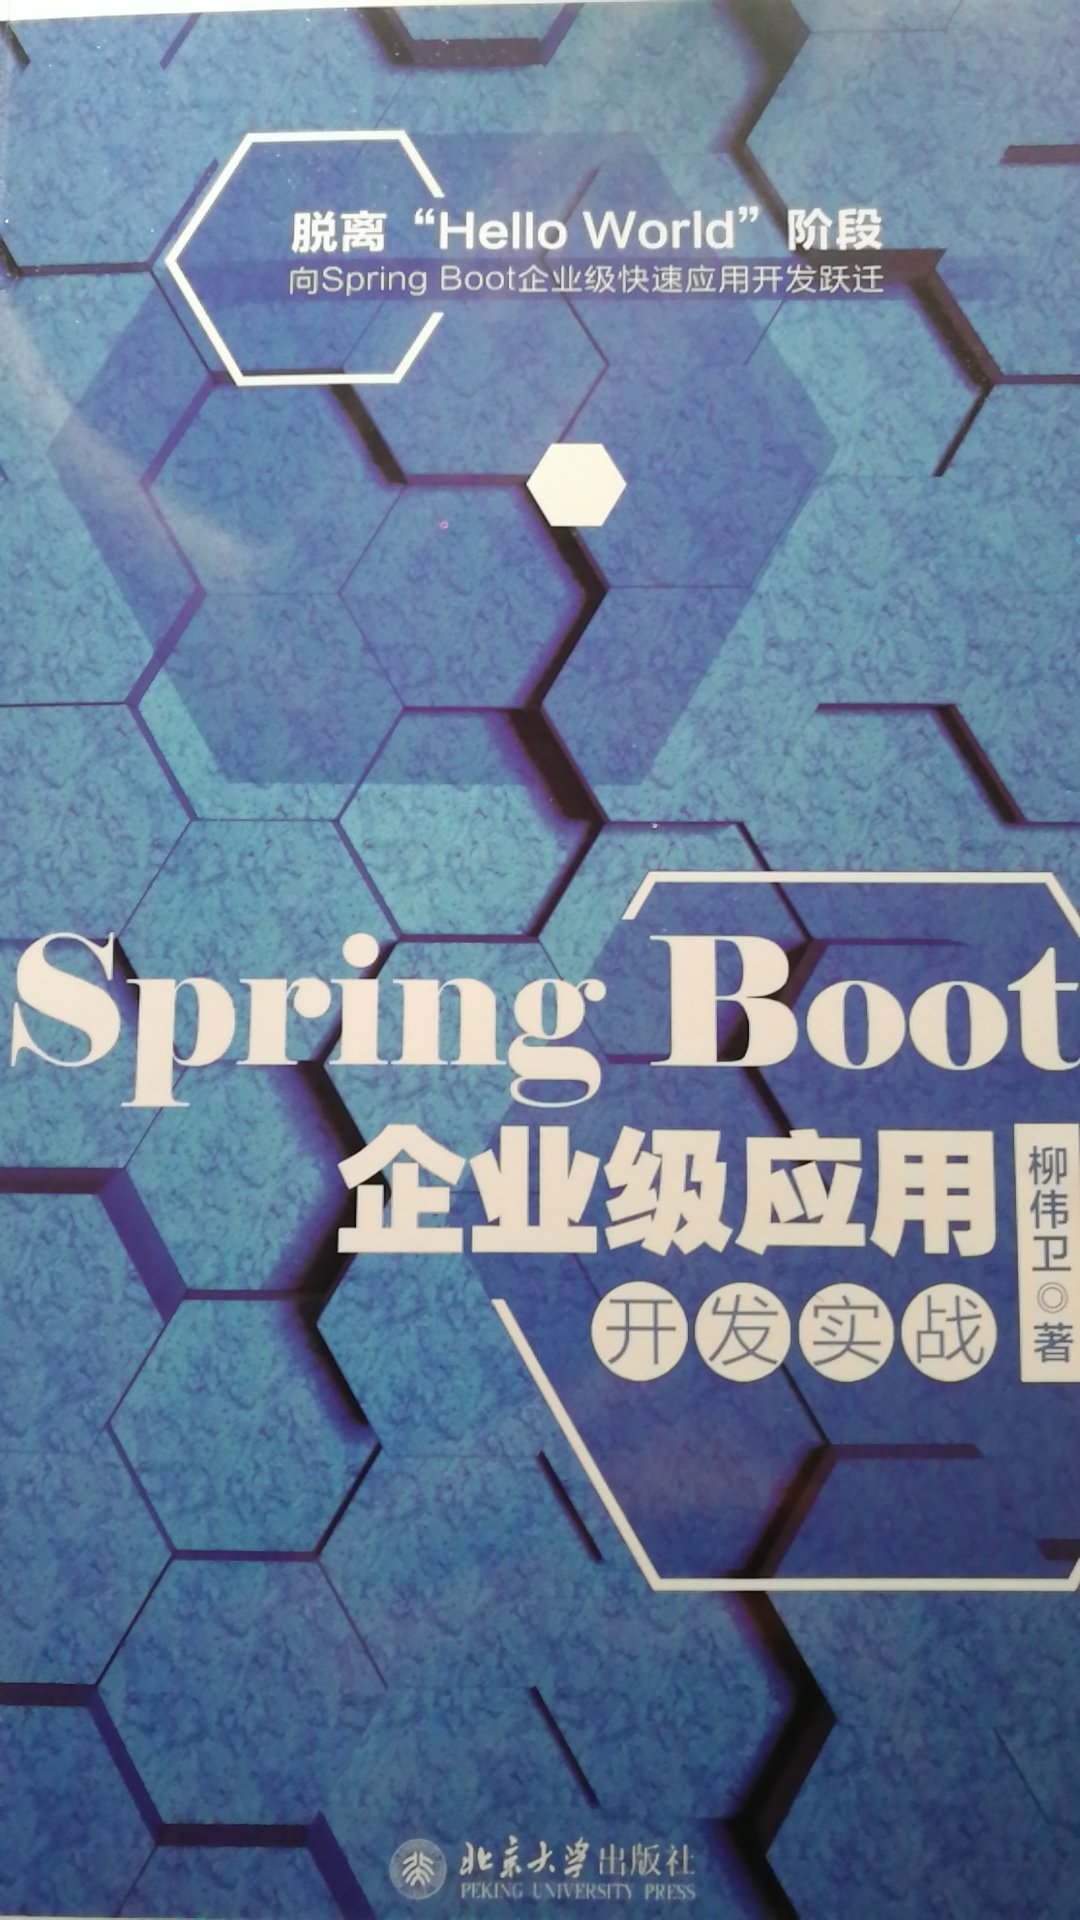 此书介绍了关于Spring Boot相关的一些新的技术框架，整体来说技术点到为止，需要深入学习需要多看相关技术的官方文档。